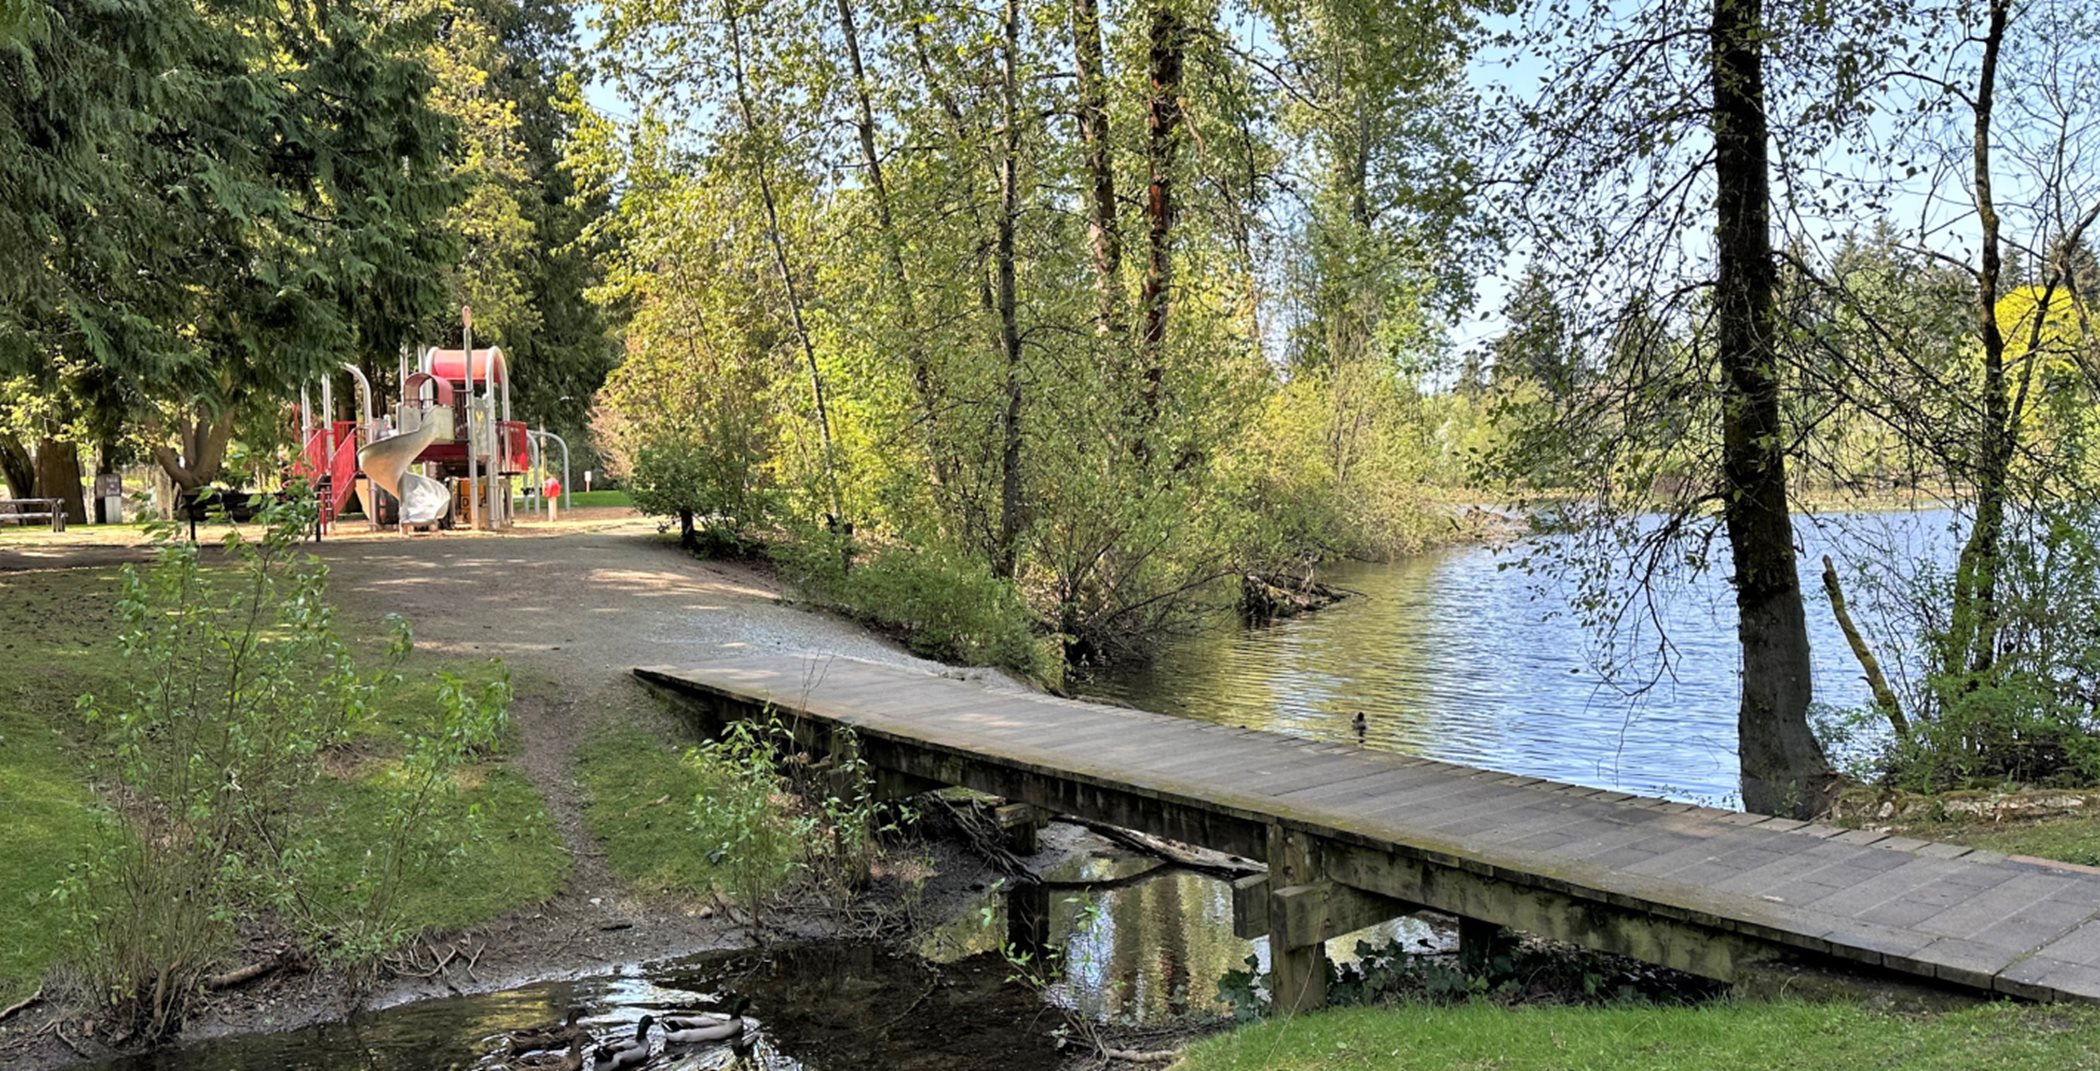 Walking bridge in Arbor Lake Park